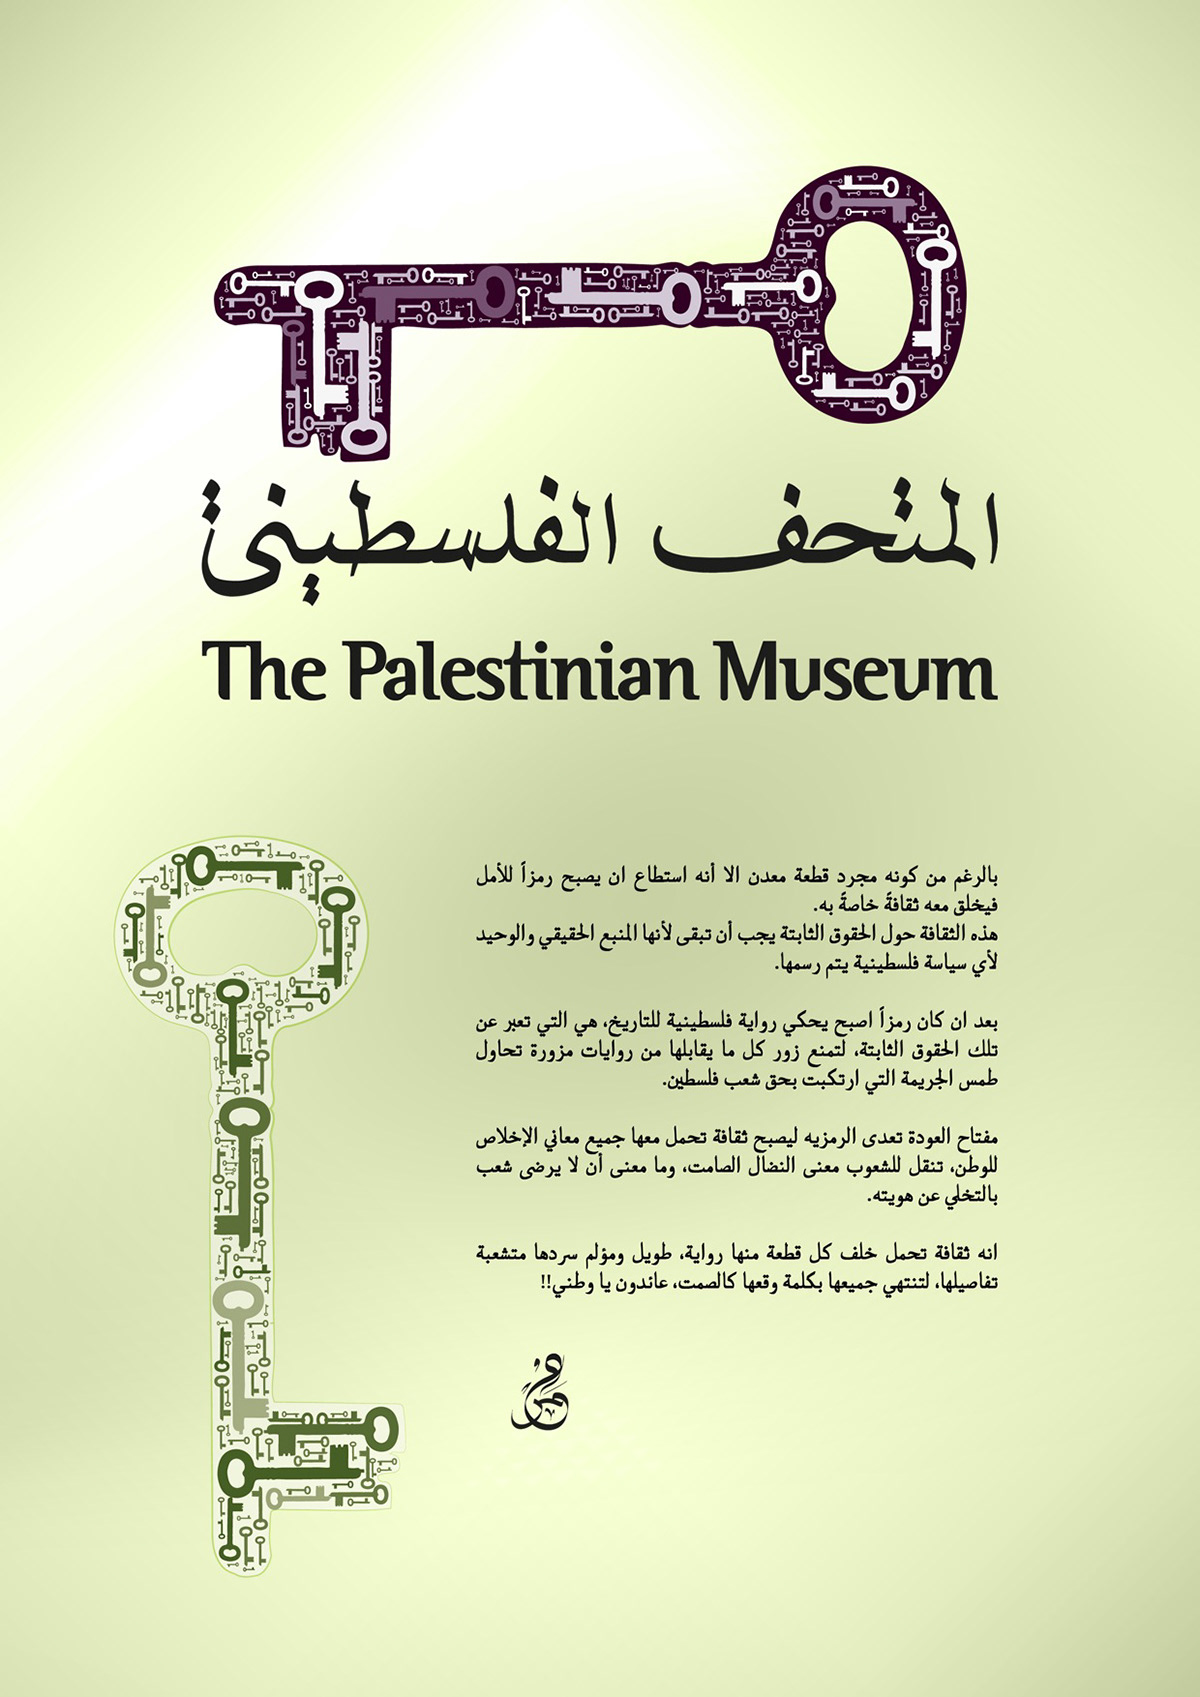 Palestinian Museum logo design Palistinian museum